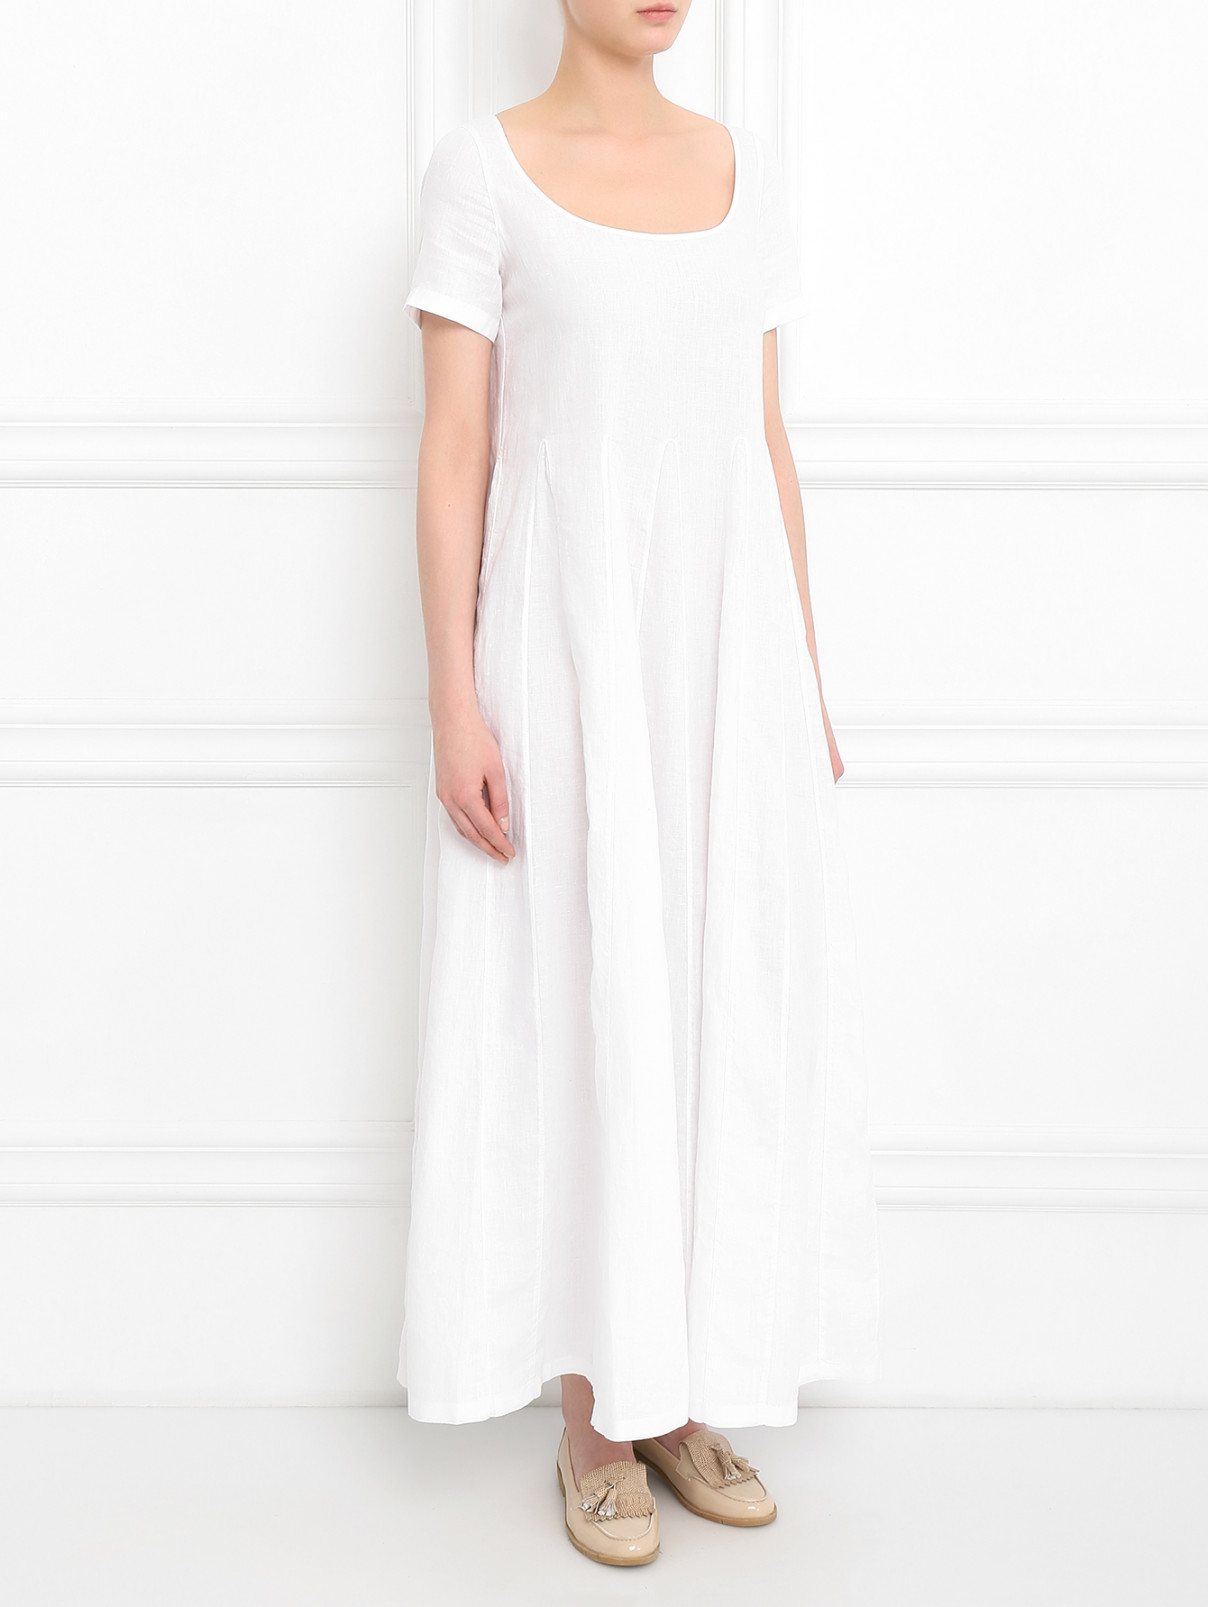 Платье-макси изо льна Aspesi  –  Модель Общий вид  – Цвет:  Белый